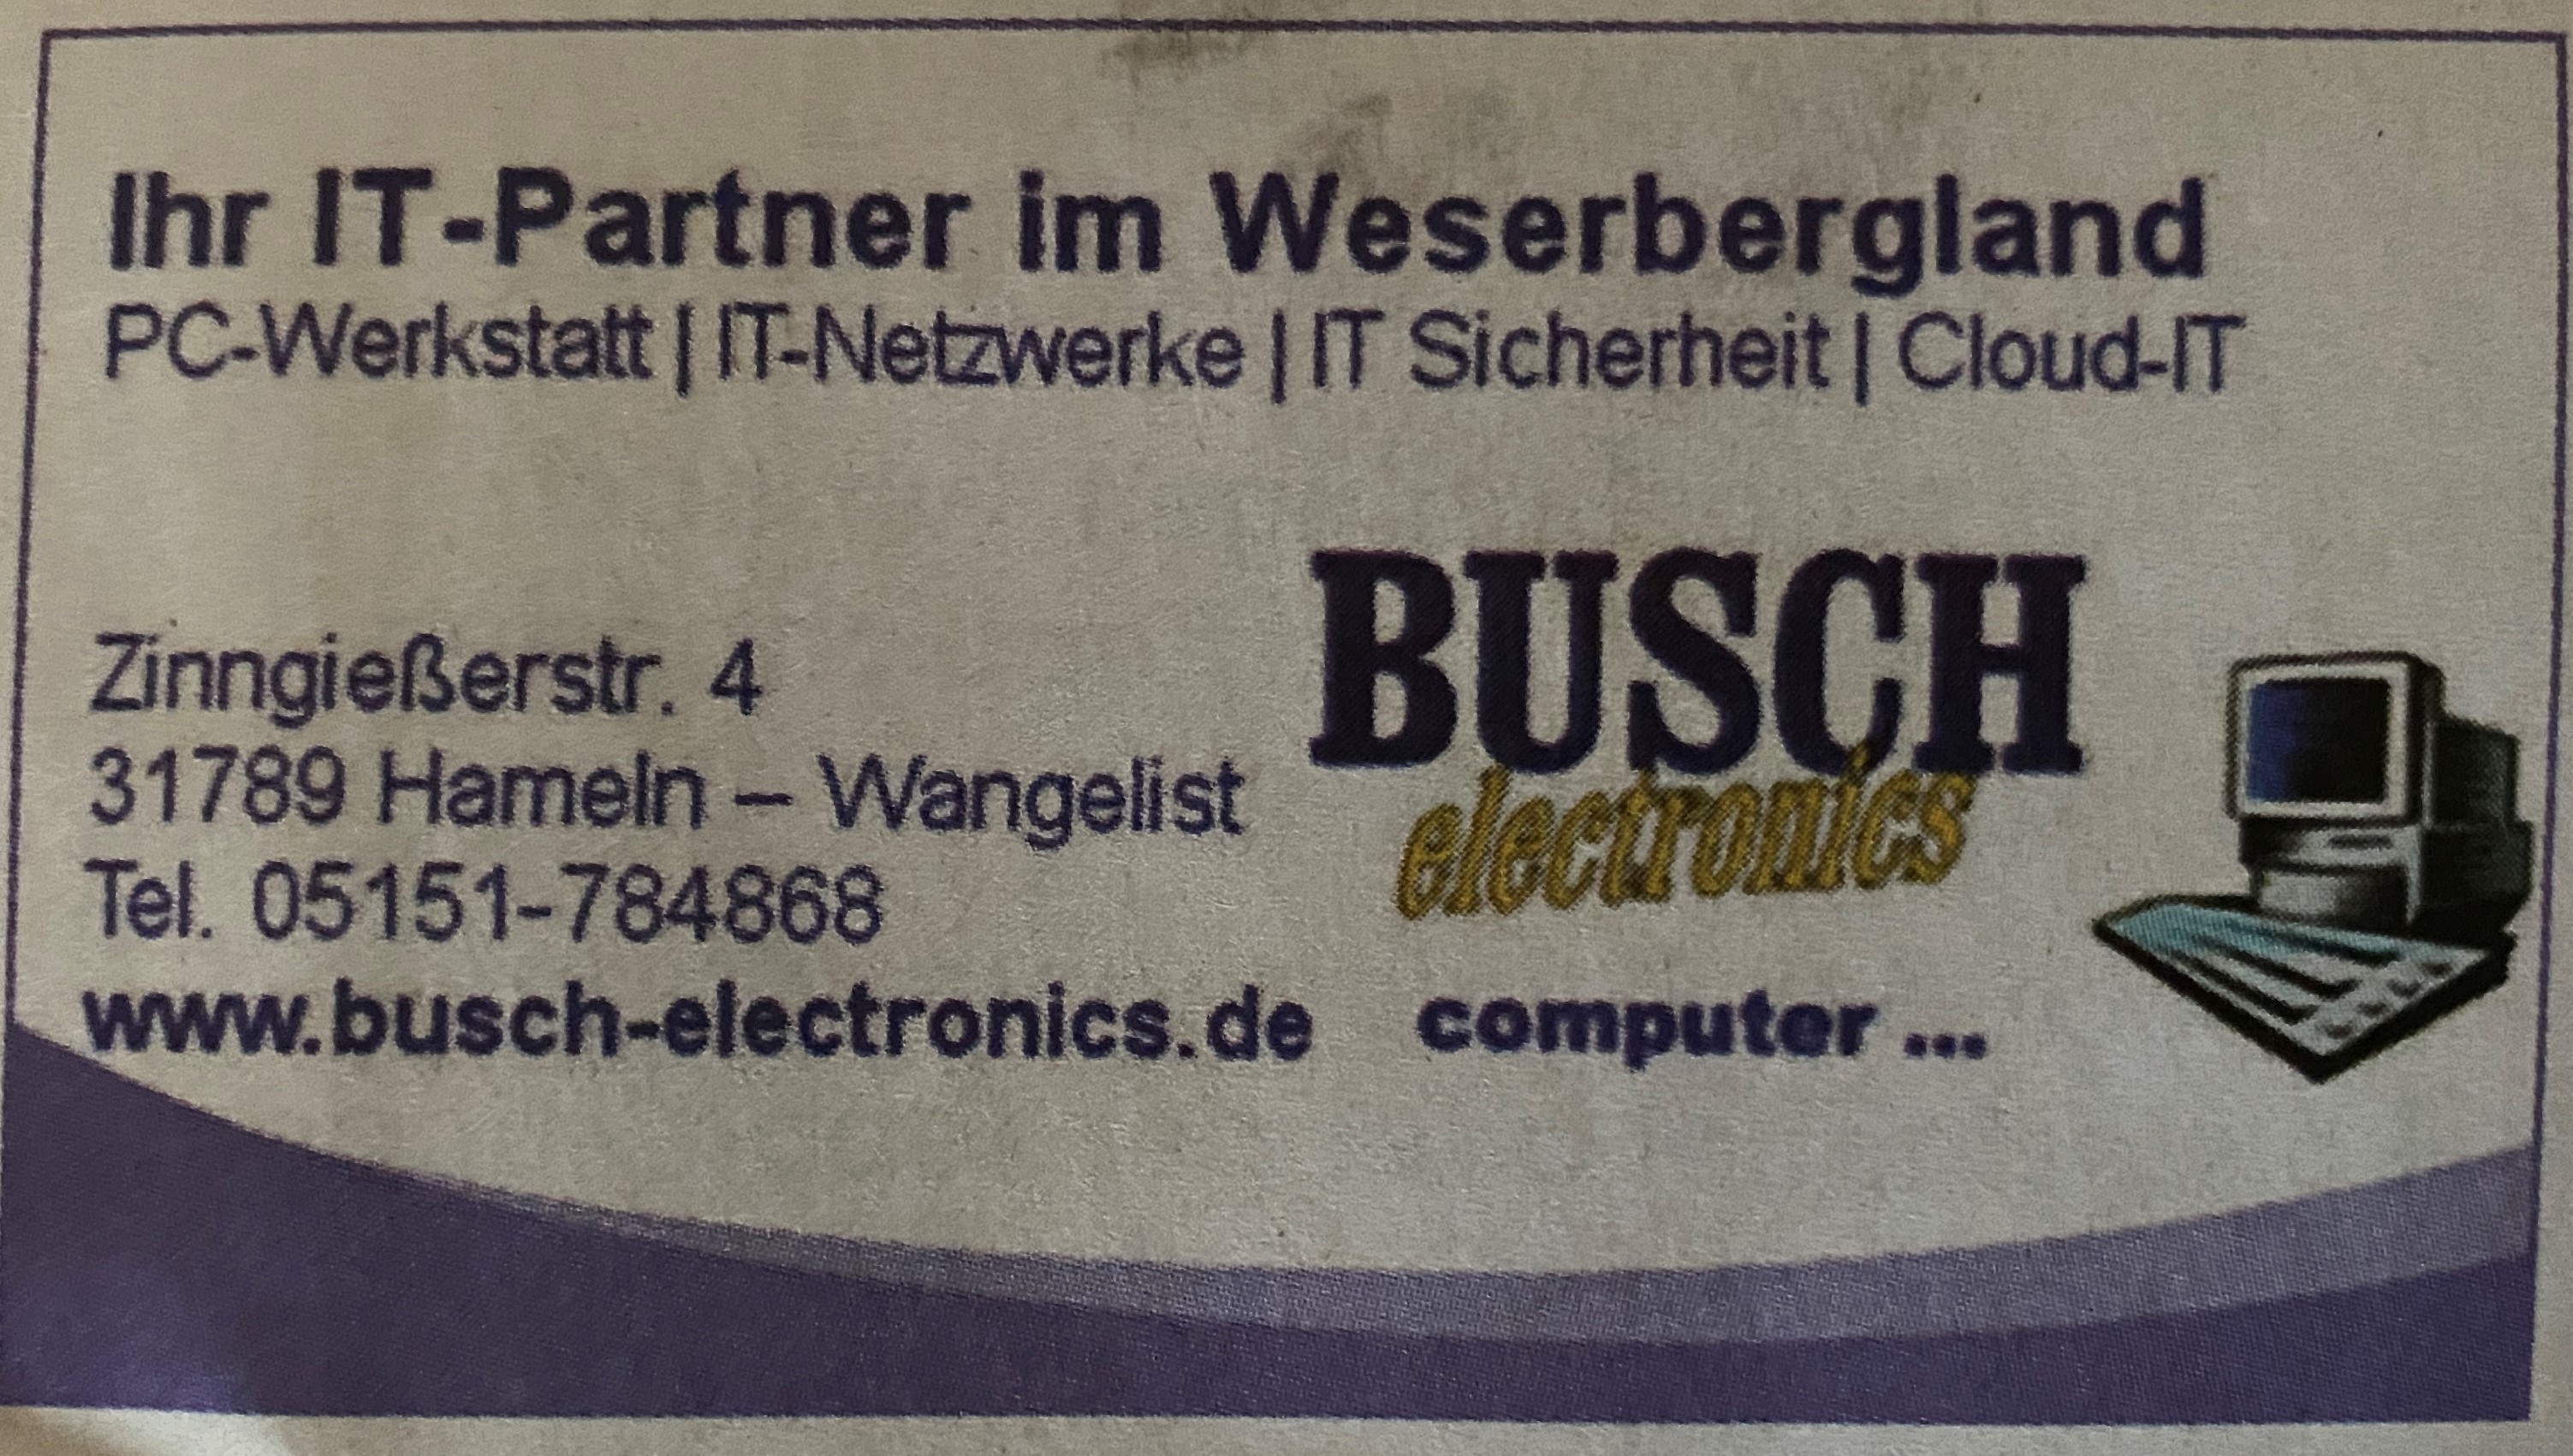 DPD Pickup Paketshop Busch Electronics in 31789 Hameln-Wangelist